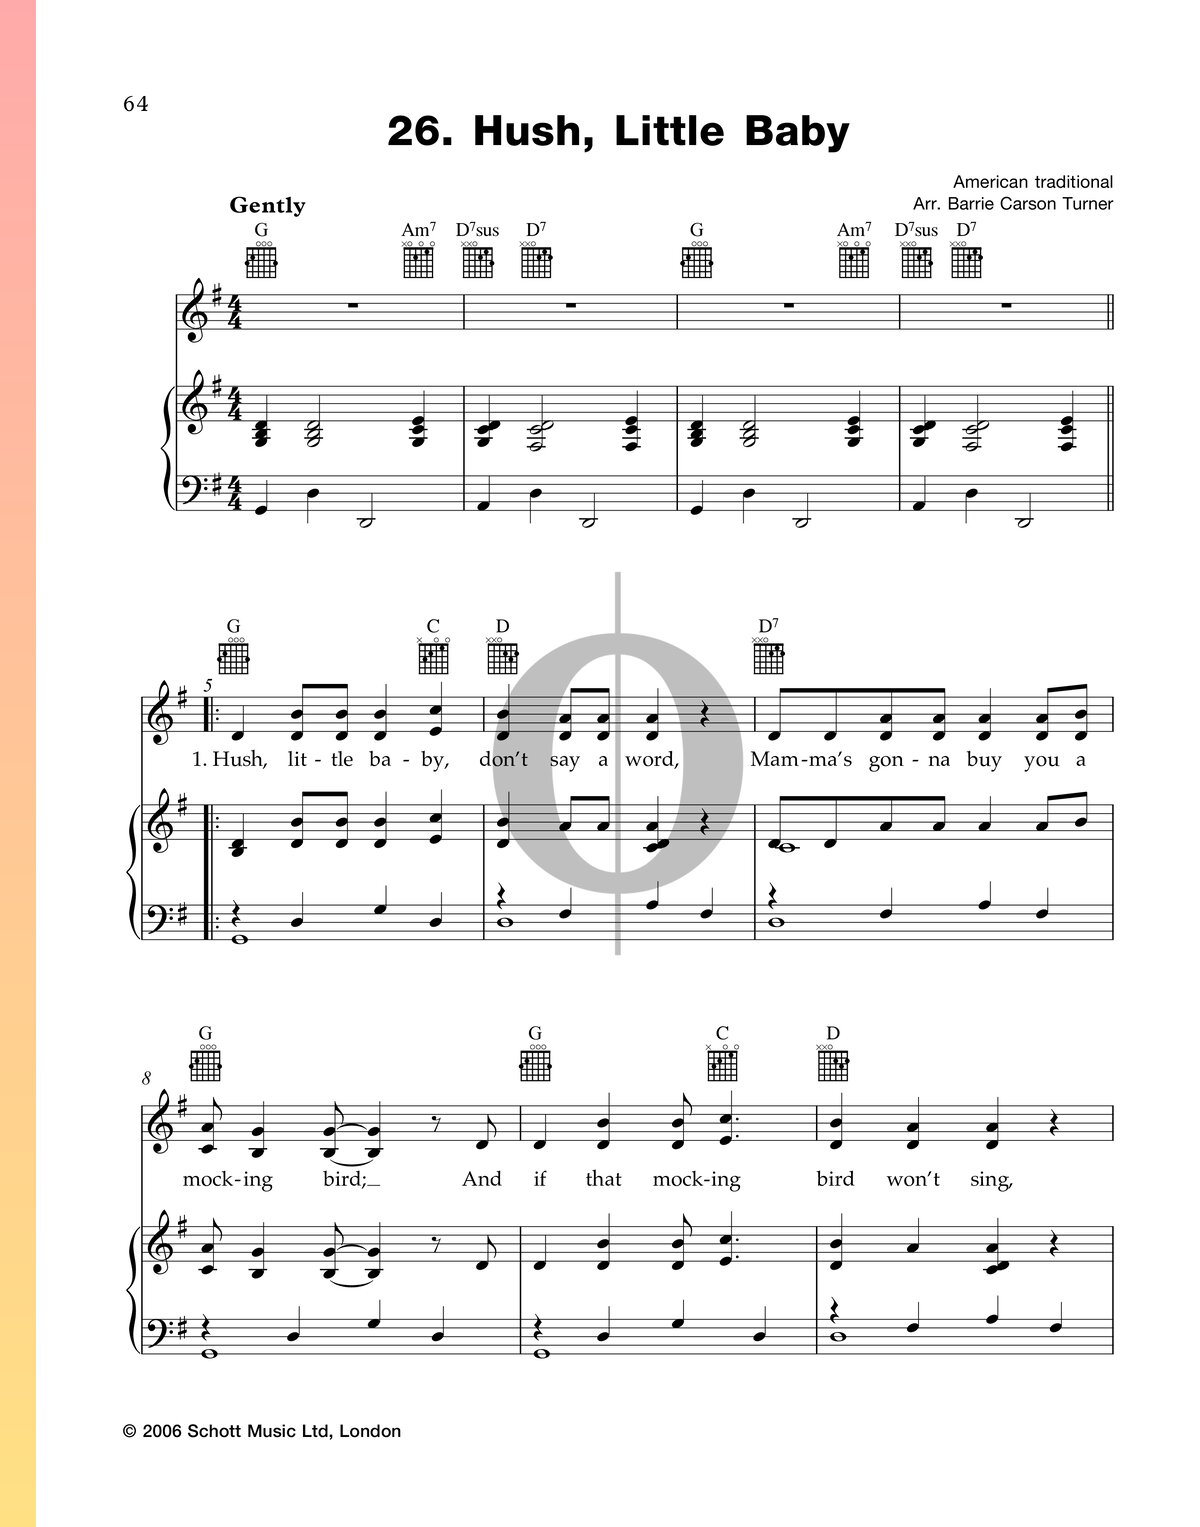 Hush, Little Baby Sheet Music (Piano, Voice, Guitar) - OKTAV